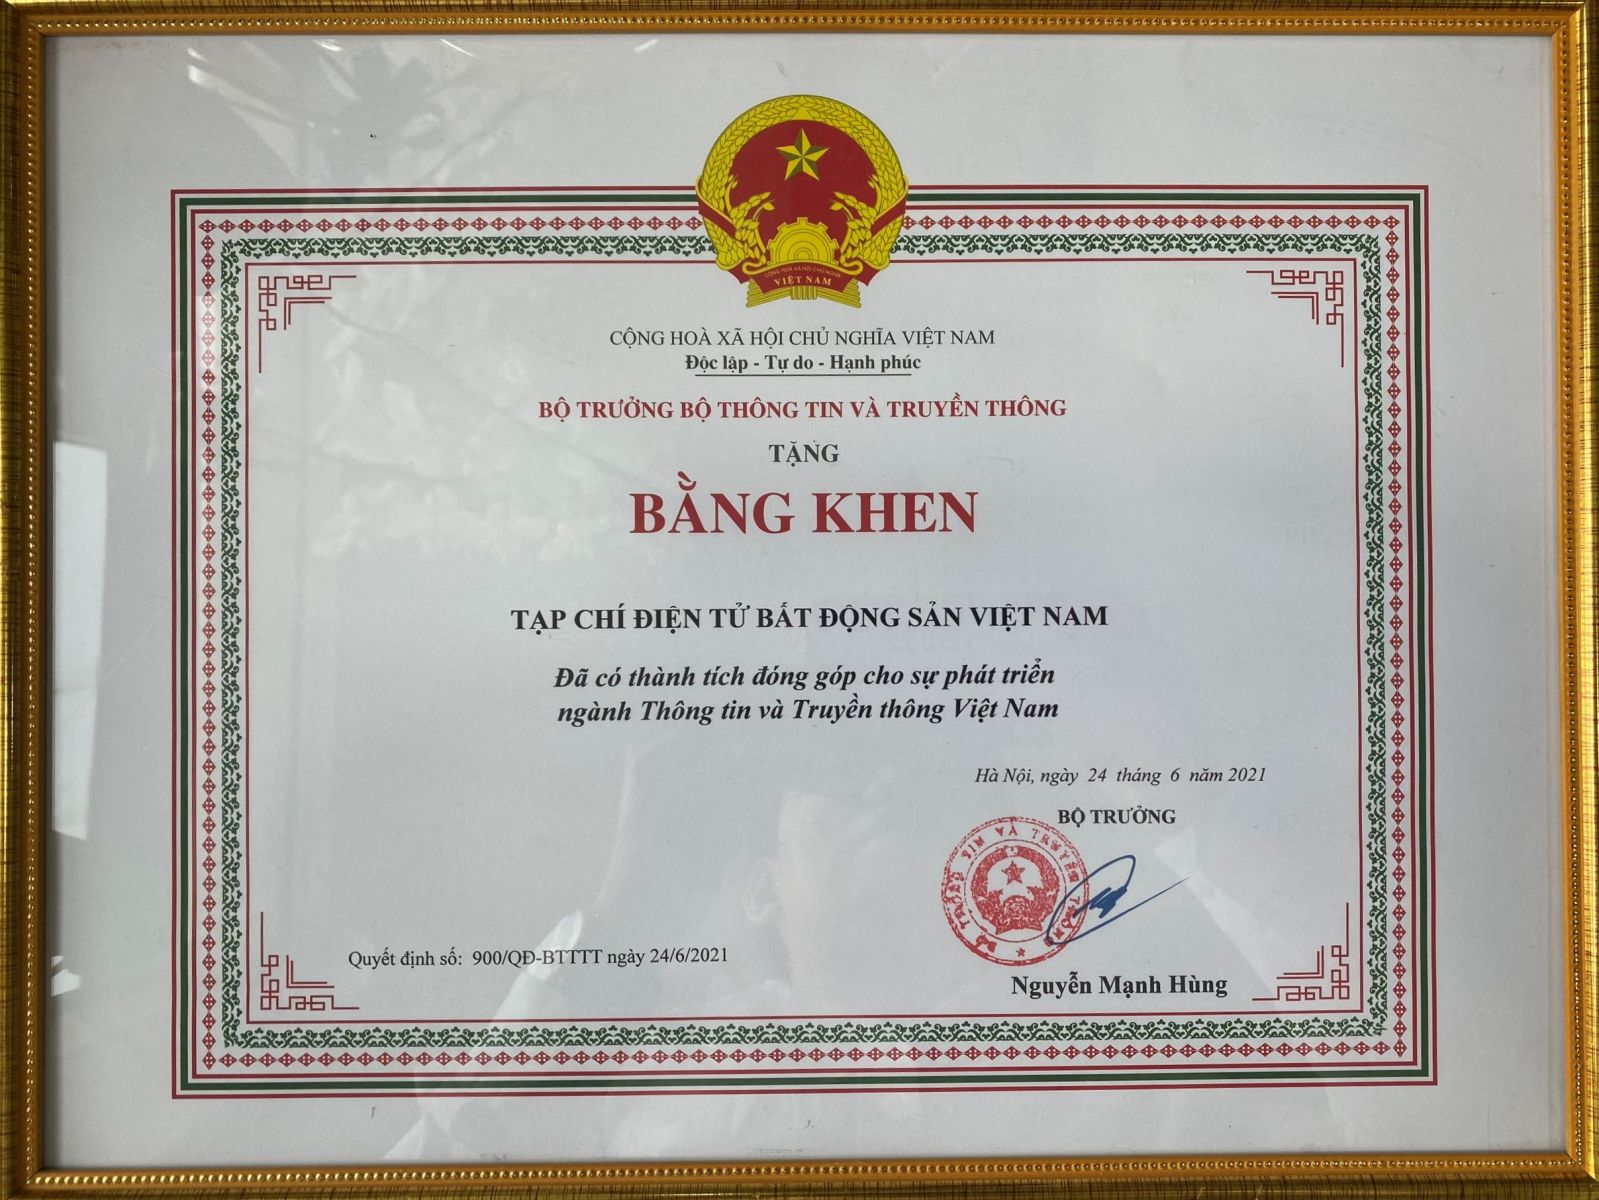 Bộ trưởng Bộ Thông tin và Truyền thông tặng bằng khen cho Tạp chí điện tử Bất động sản Việt Nam đã có thành tích đóng góp  cho sự phát triển ngành Thông tin và Truyền thông Việt Nam.